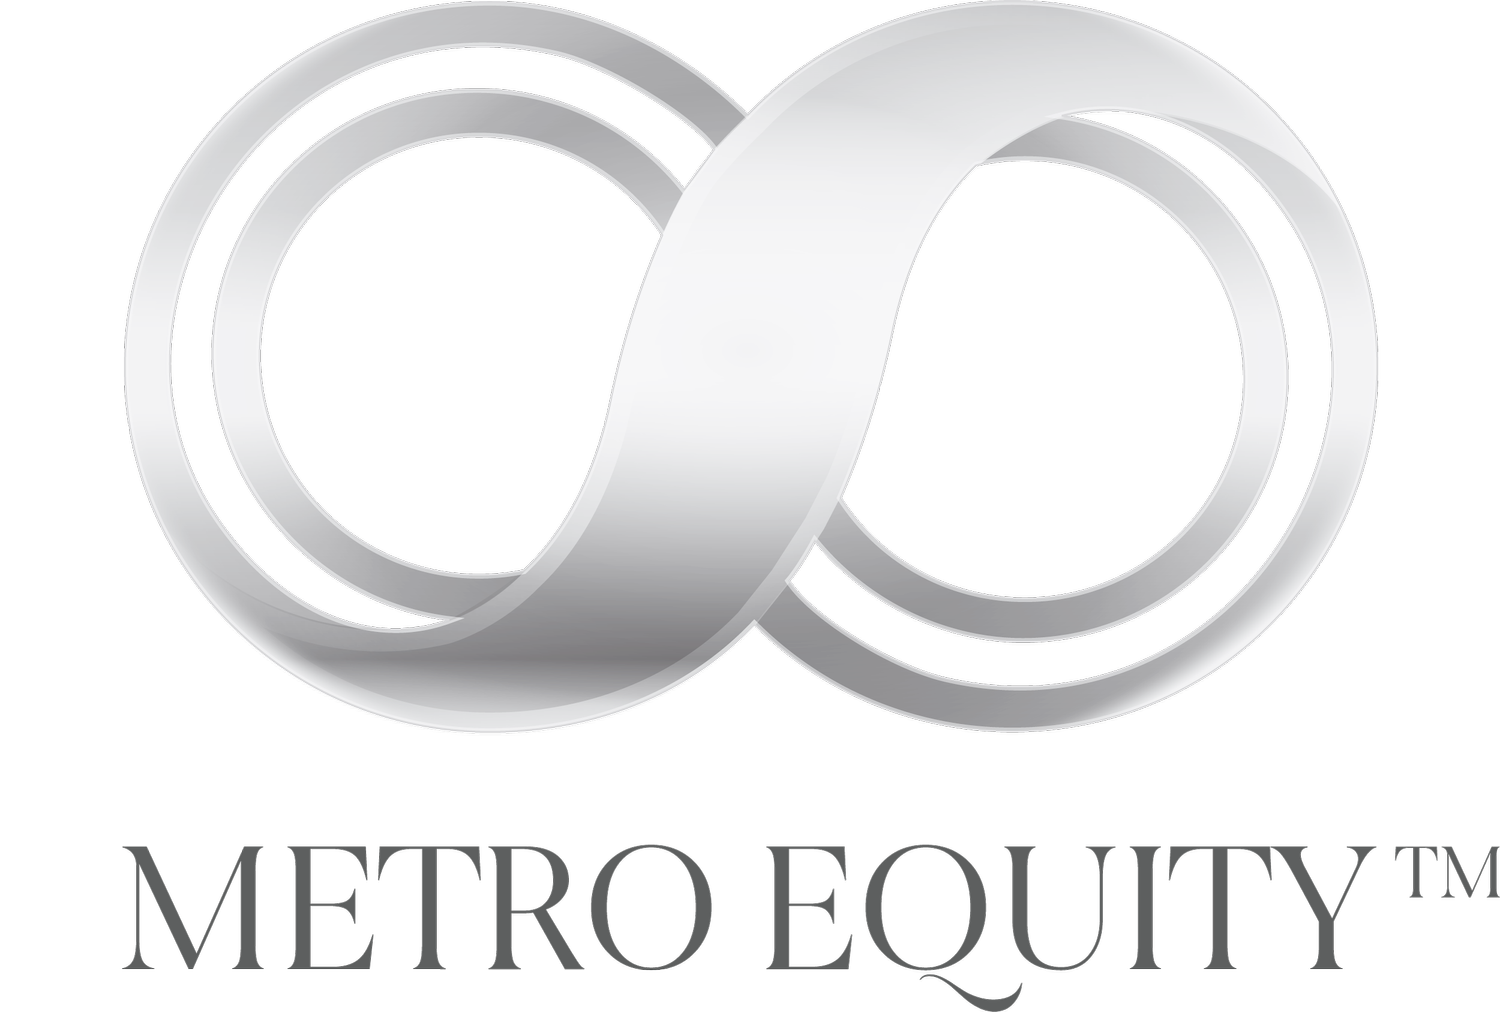 Metro Equity PG